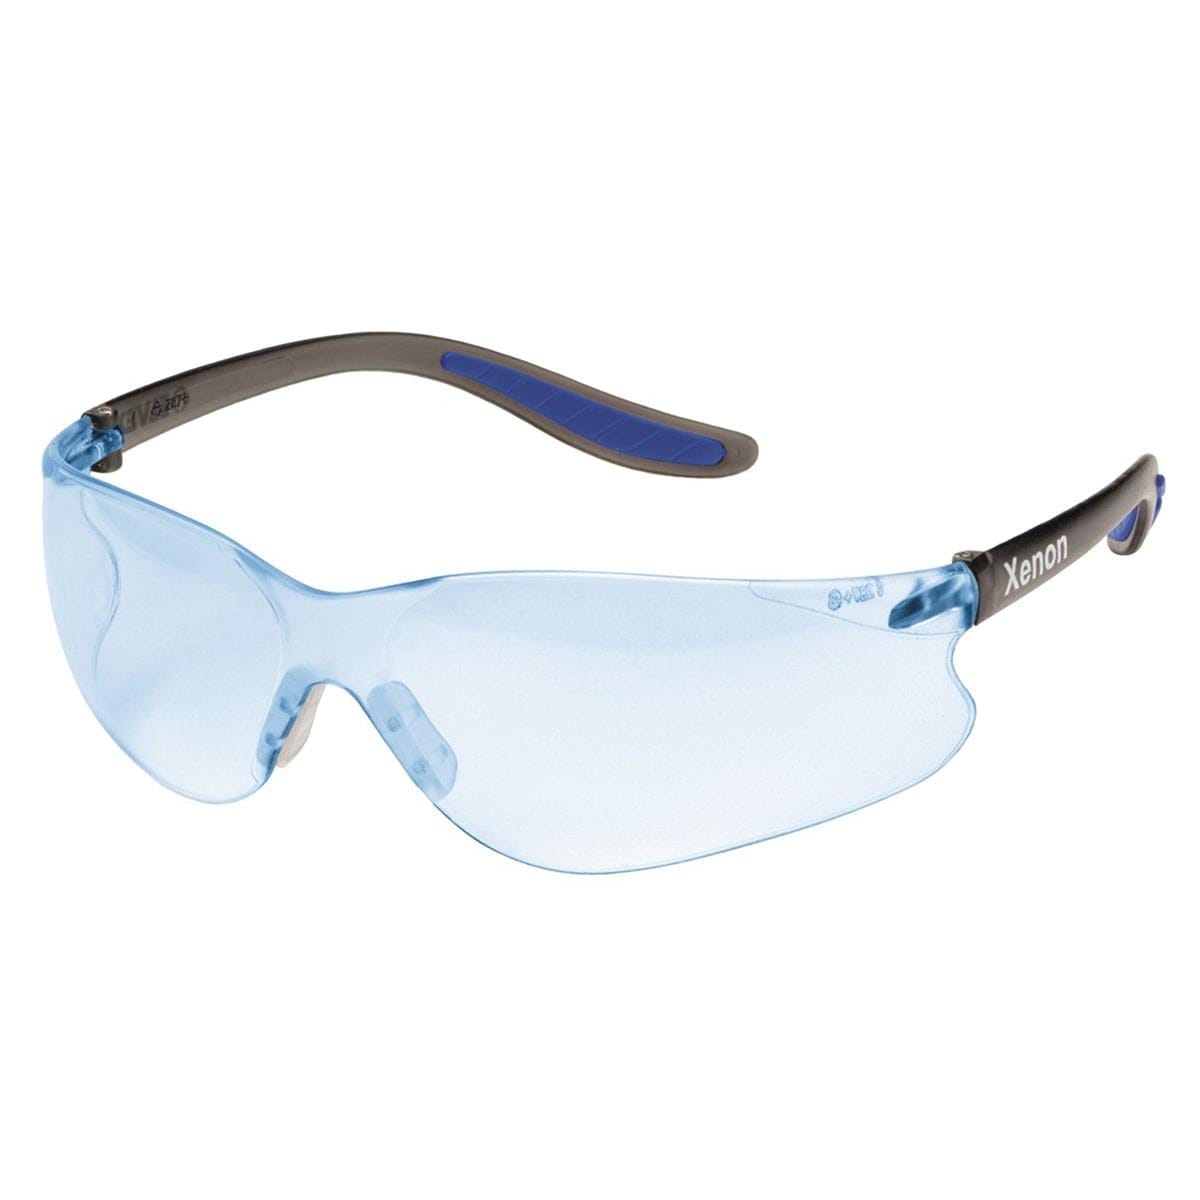 Elvex Xenon Safety Glasses